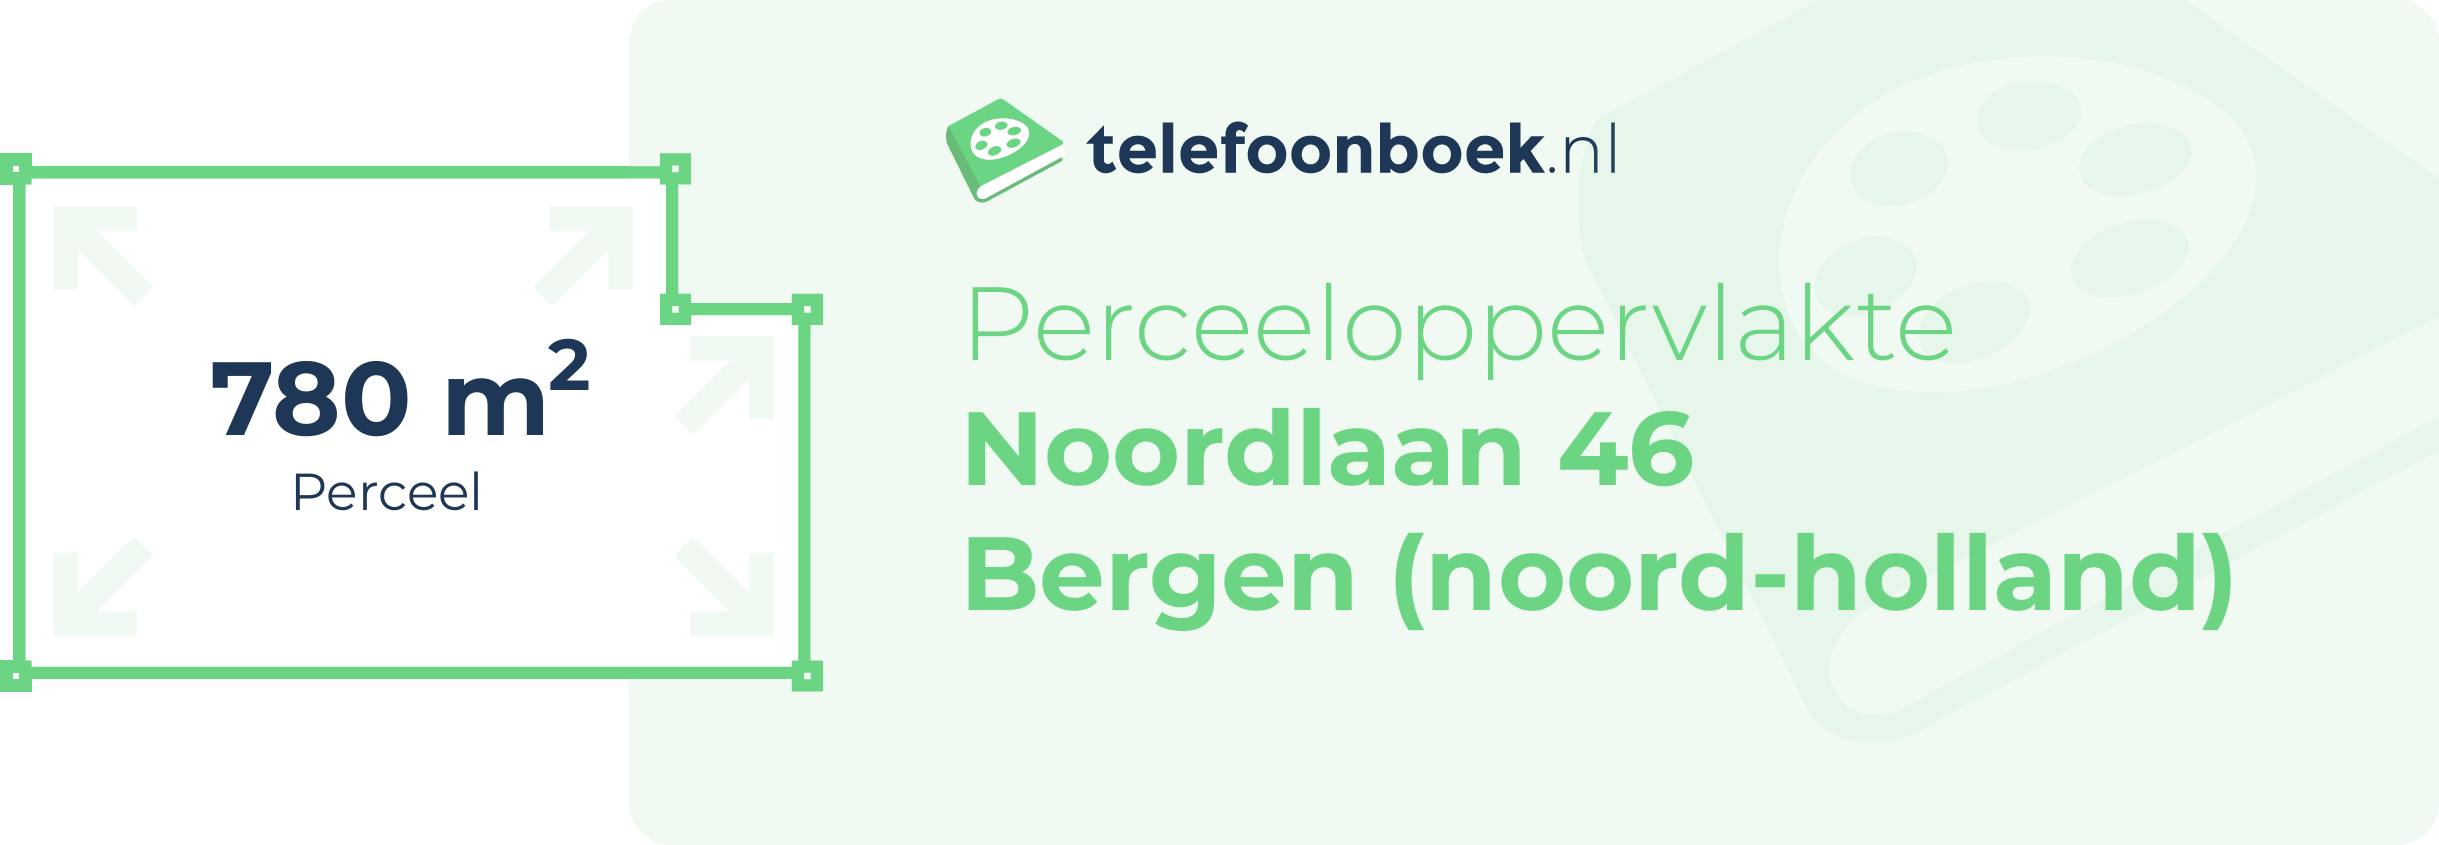 Perceeloppervlakte Noordlaan 46 Bergen (Noord-Holland)